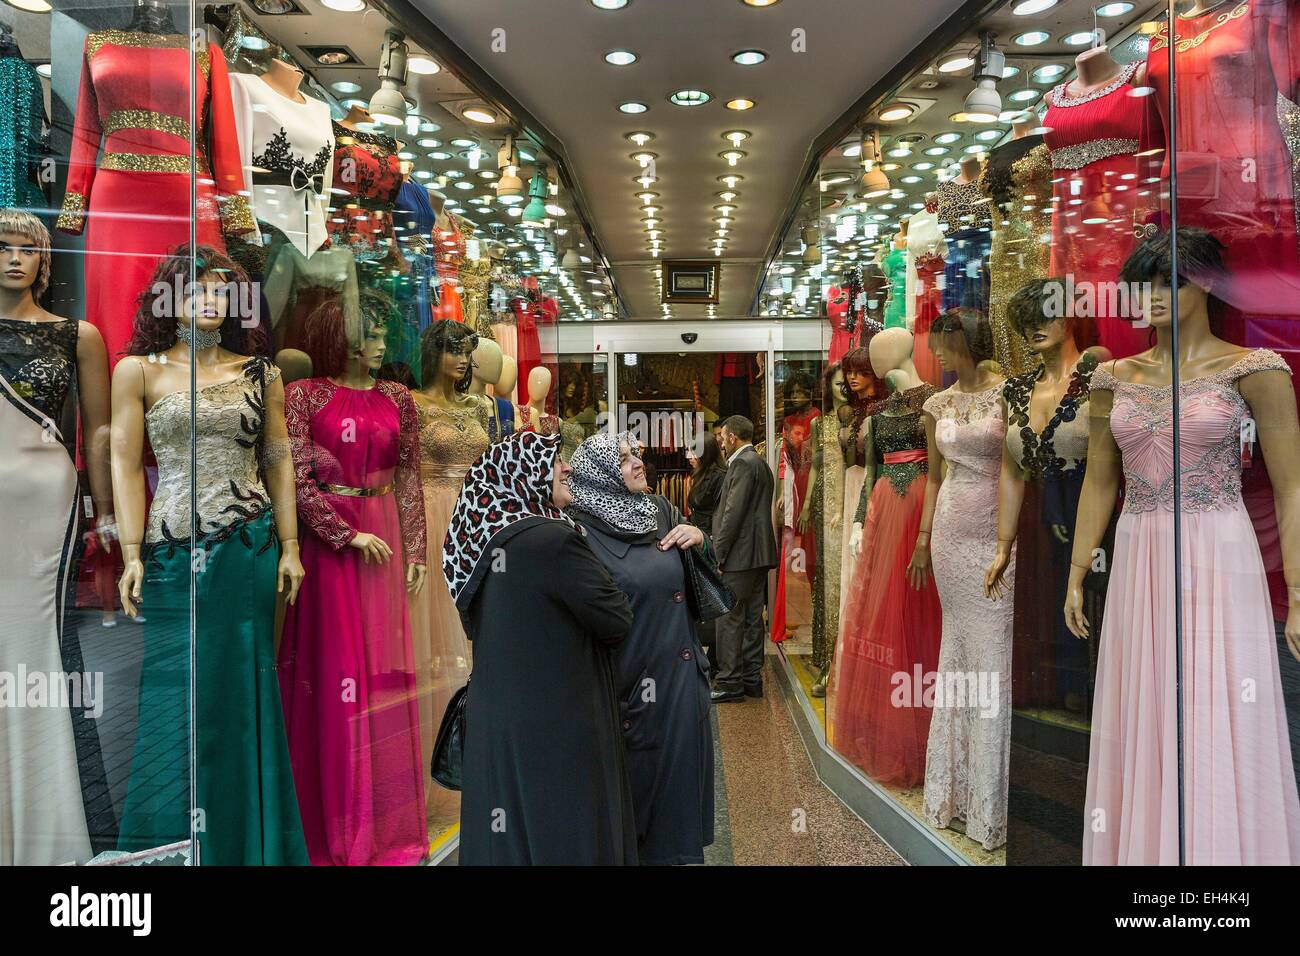 La Turquie, Istanbul, Mercan, les femmes turques en contemplant la fenêtre d'un magasin de vêtements traditionnels Banque D'Images